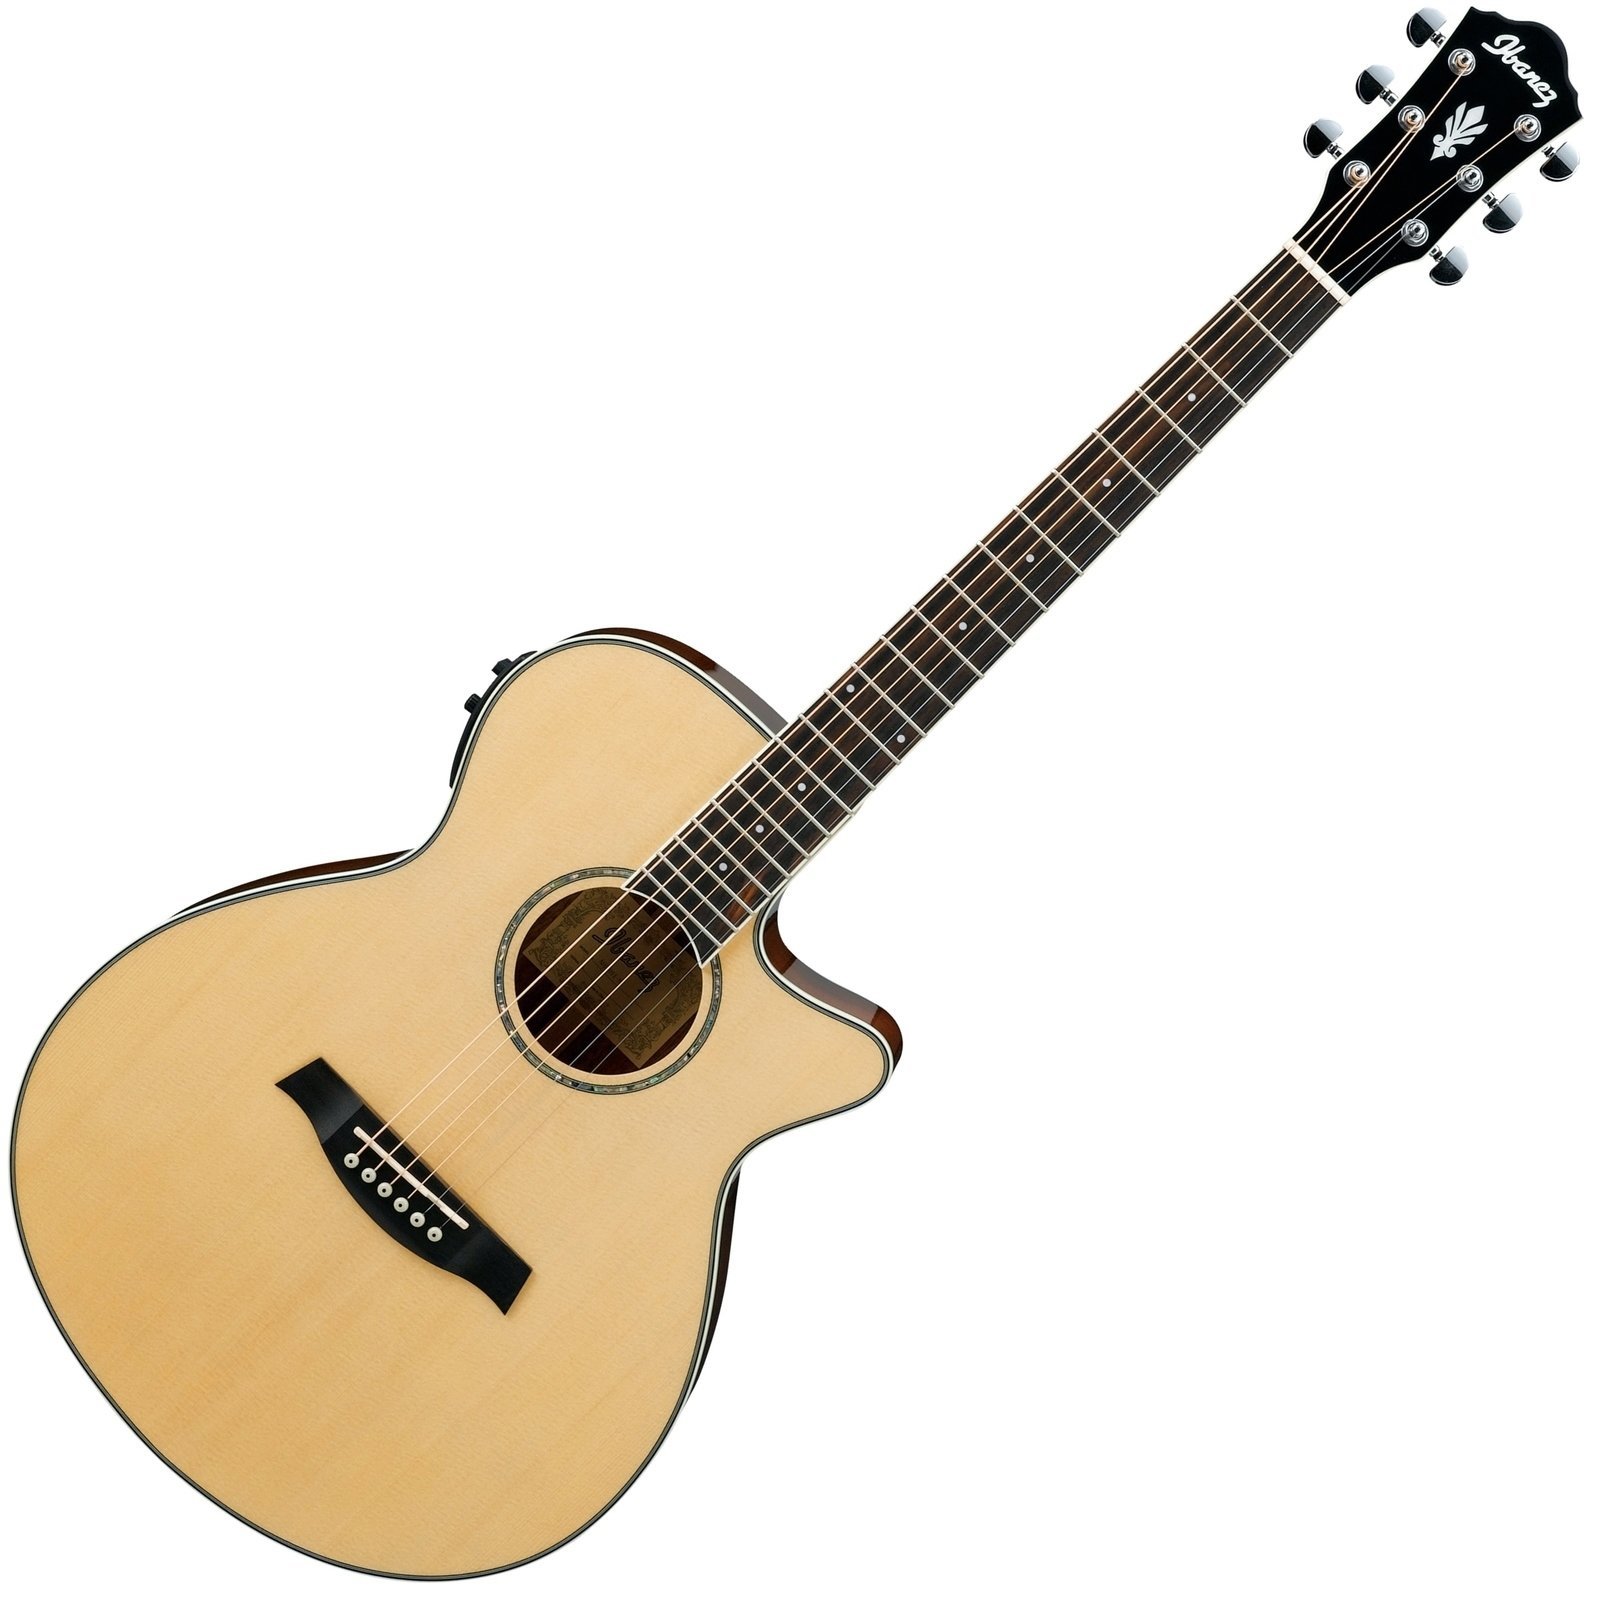 Jumbo elektro-akoestische gitaar Ibanez AEG10II-NT Natural